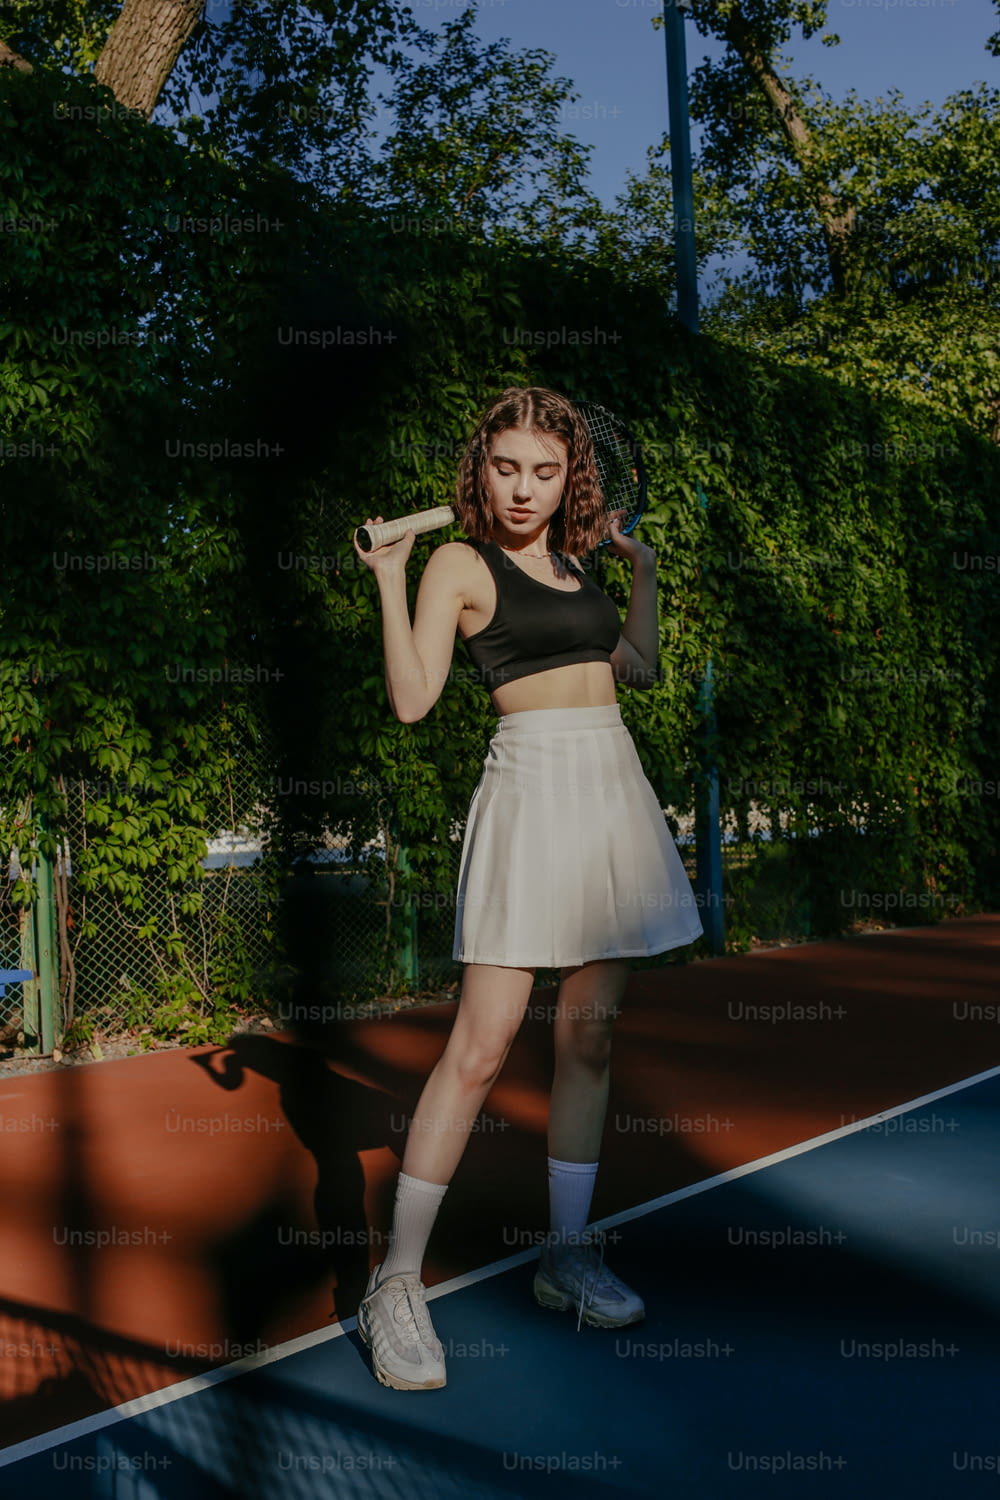 a woman standing on a tennis court holding a racquet